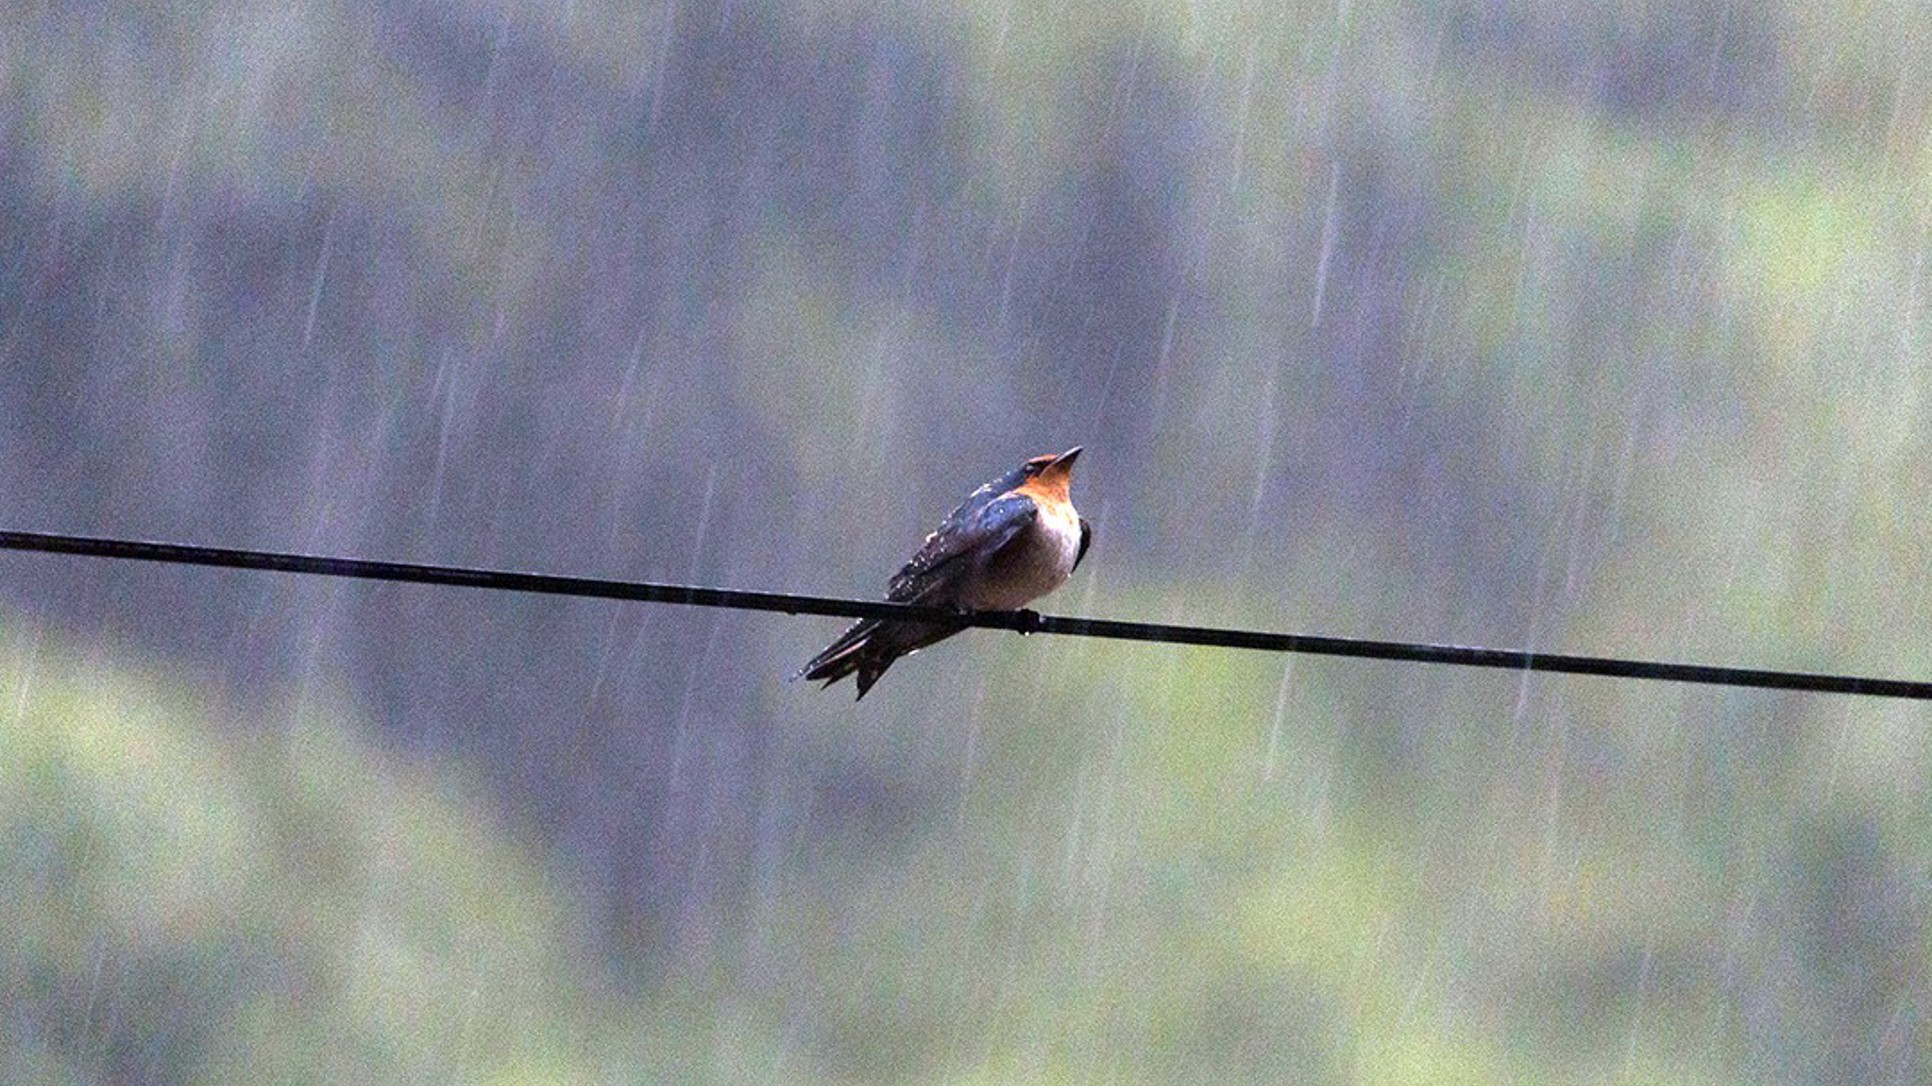 Lastavica nisko leti pred kišu jer padne pritisak, pa i mušice lete niže